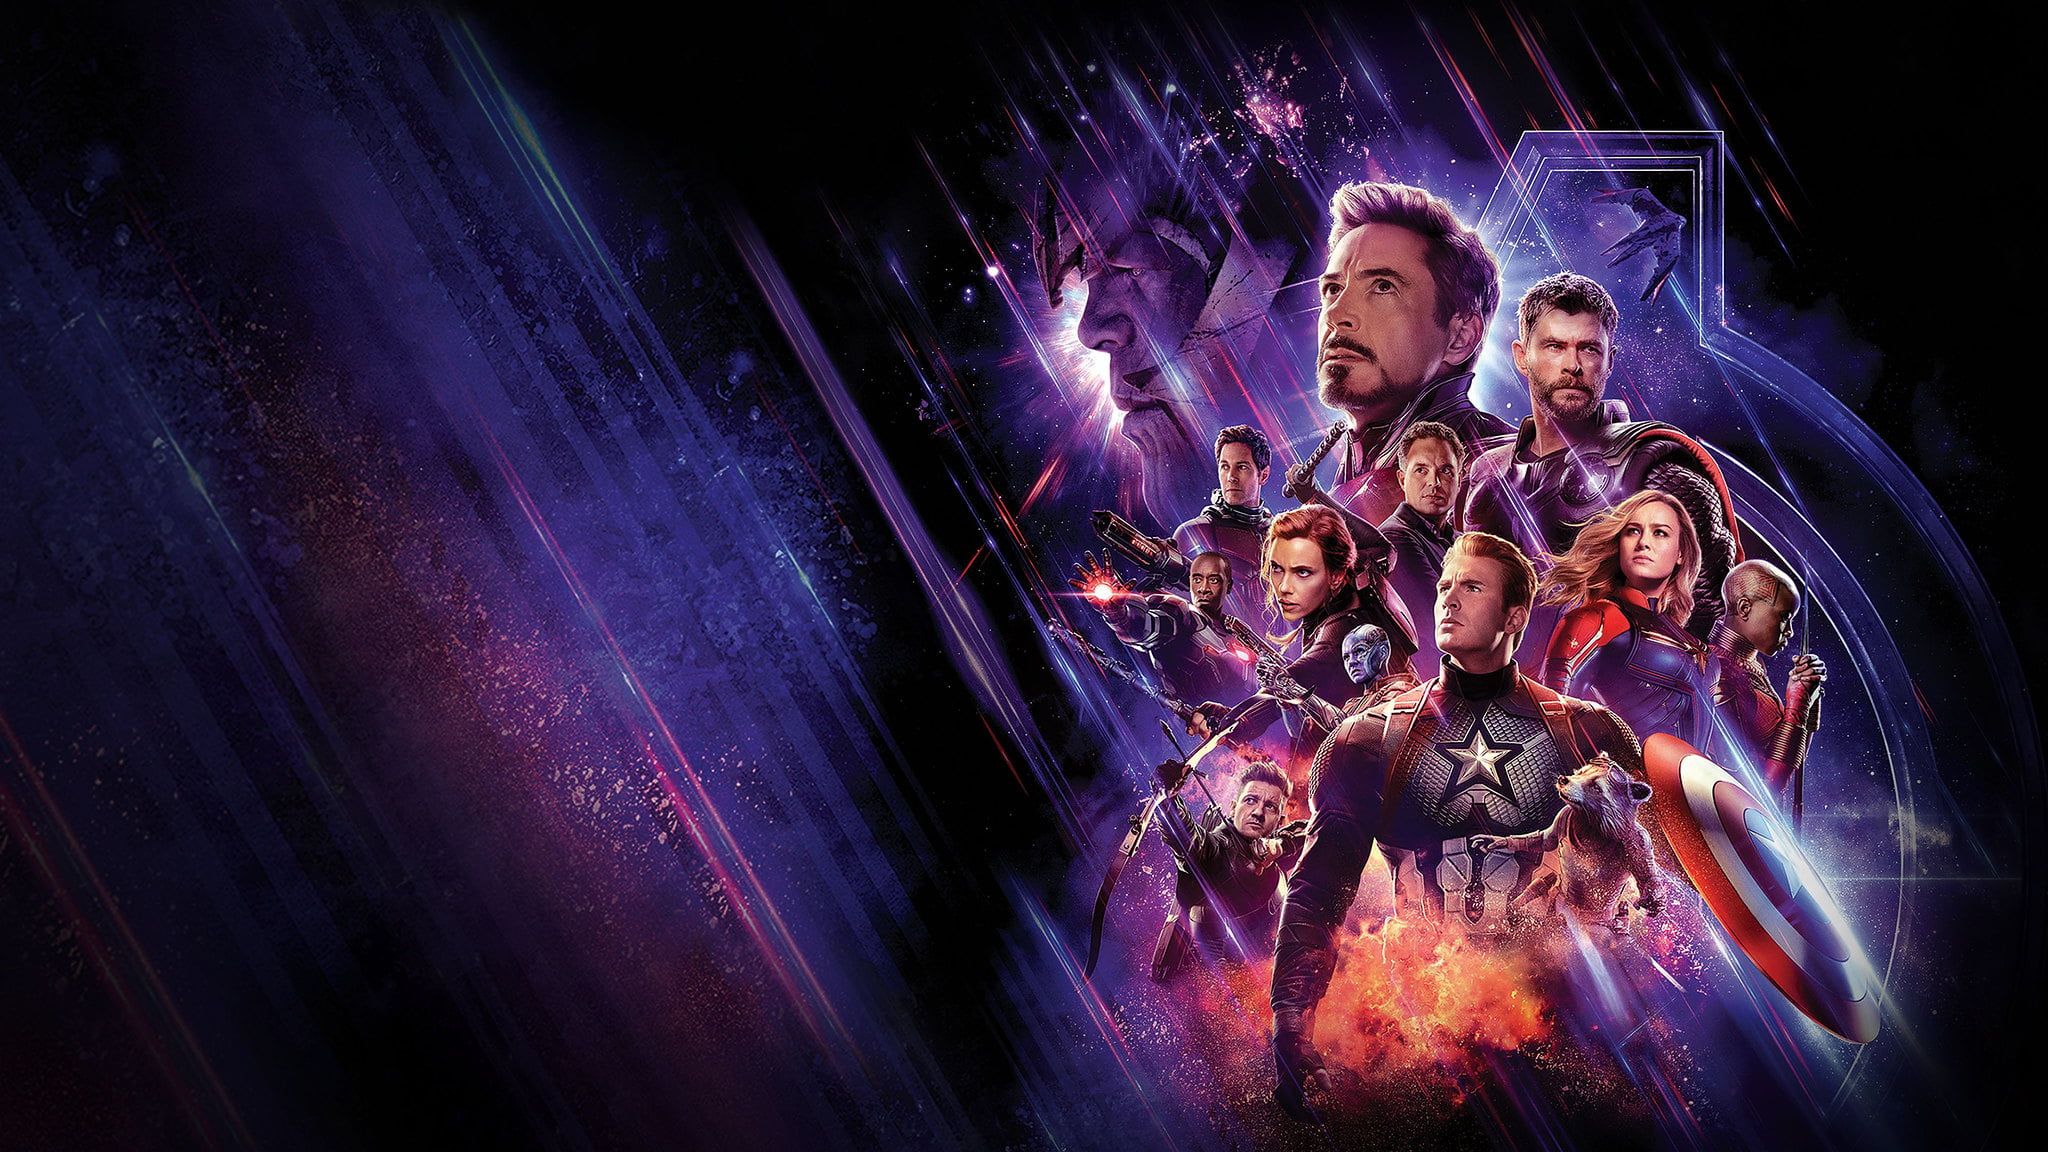 The Avengers Avengers Endgame #Ant Man Avengers EndGame Black Widow Captain America Captain Marvel #Hawkeye I. Avengers Wallpaper, Avengers, Iron Man HD Wallpaper